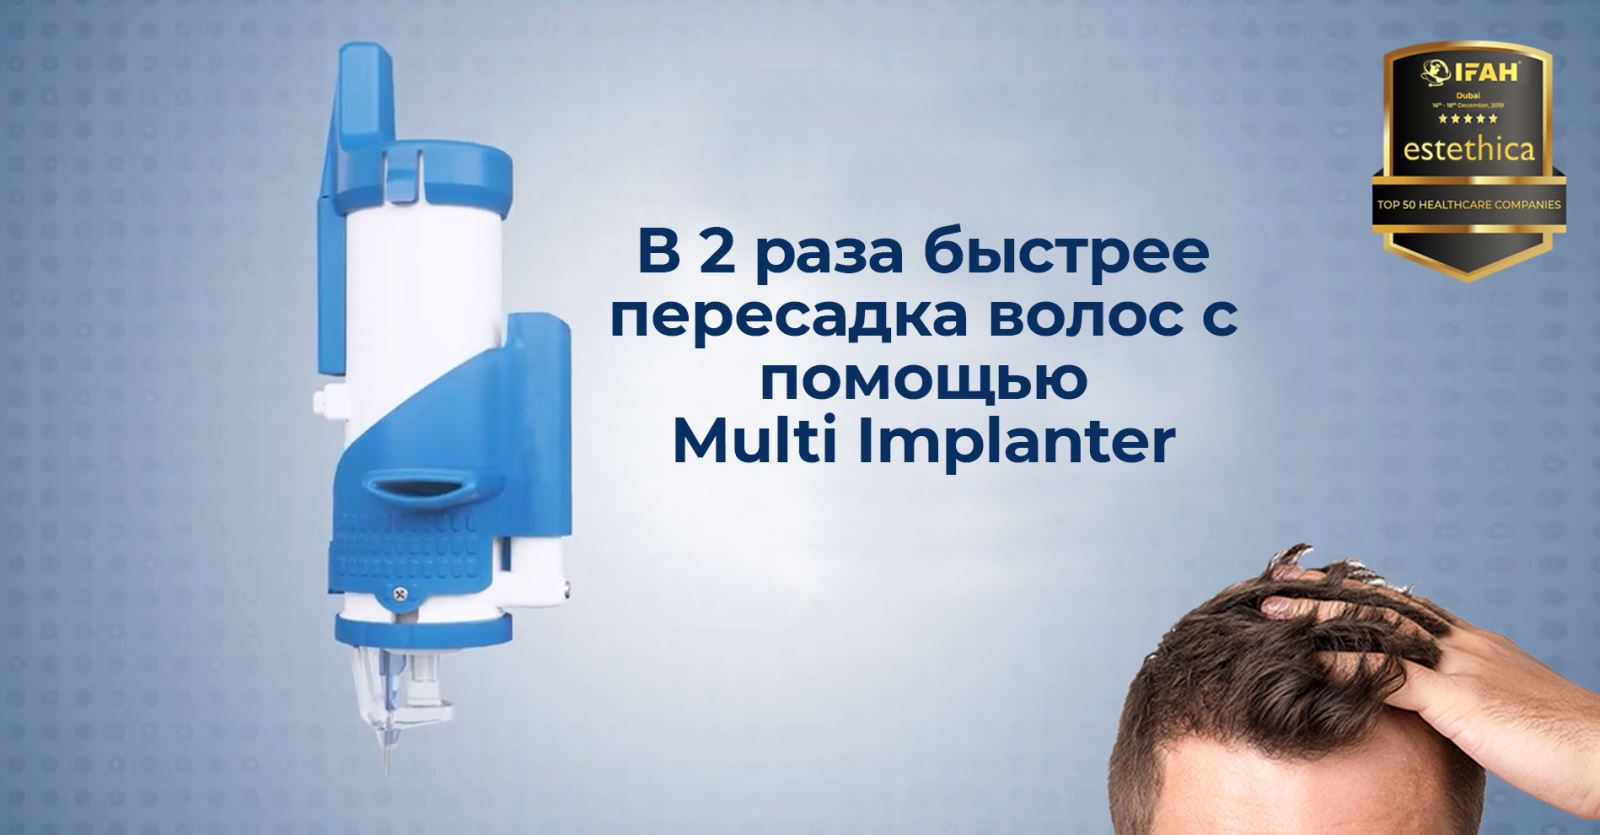 Multi Implanter